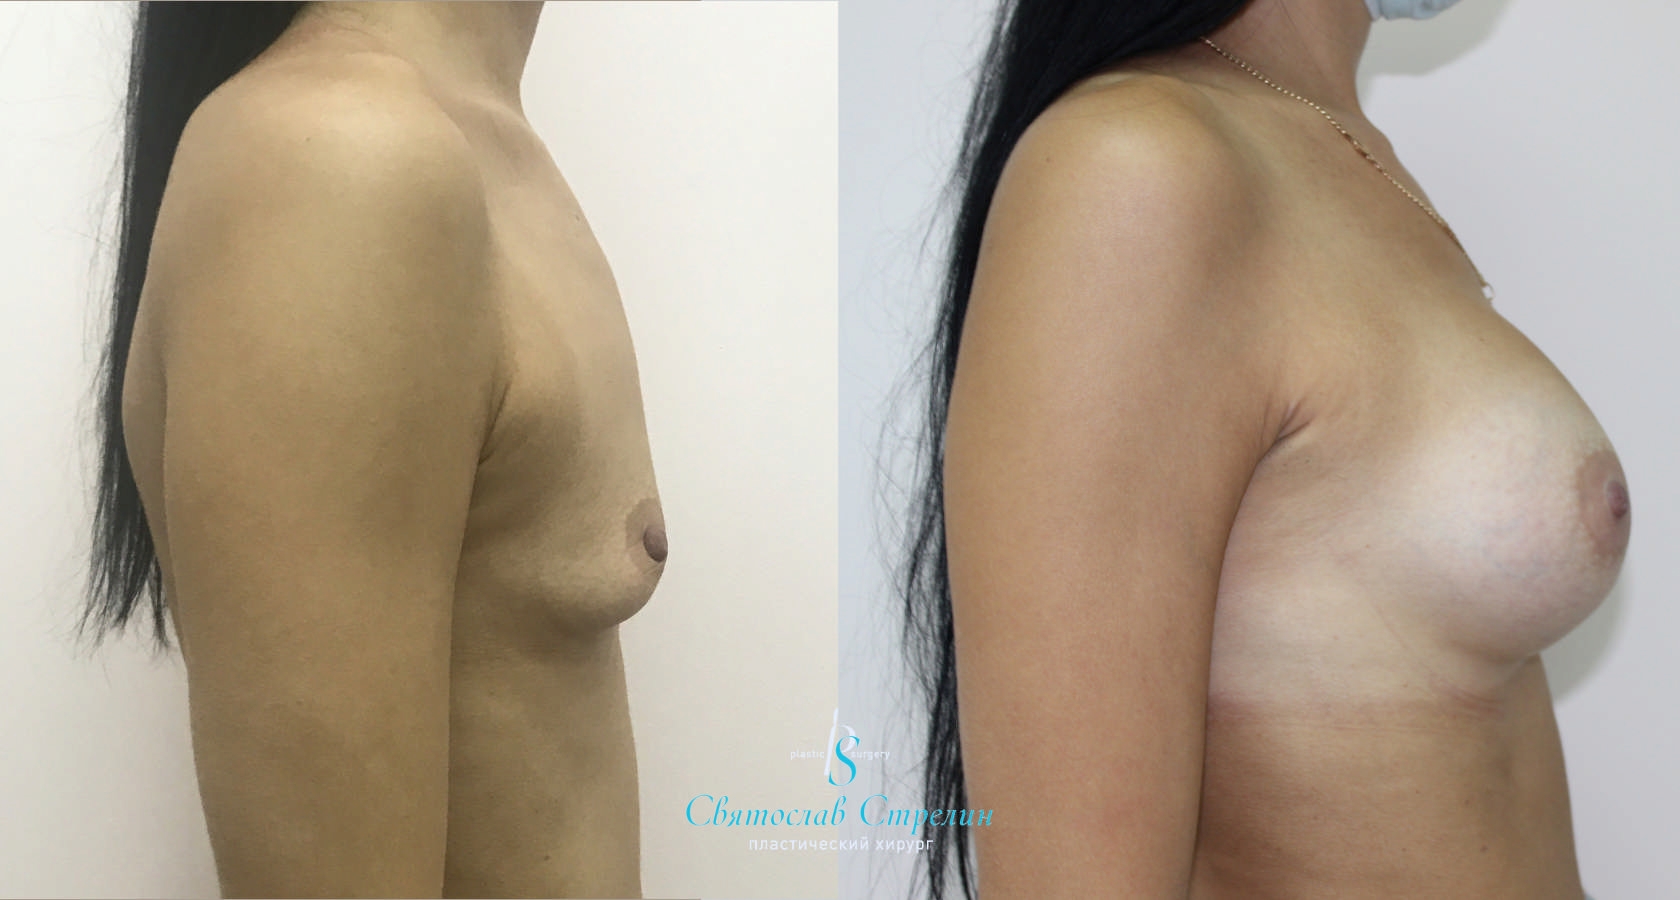 Увеличение груди, 6 месяцев после операции, импланты Себбин 380 мл, анатомические, большая высота, высокая проекция, доступ подмышечный